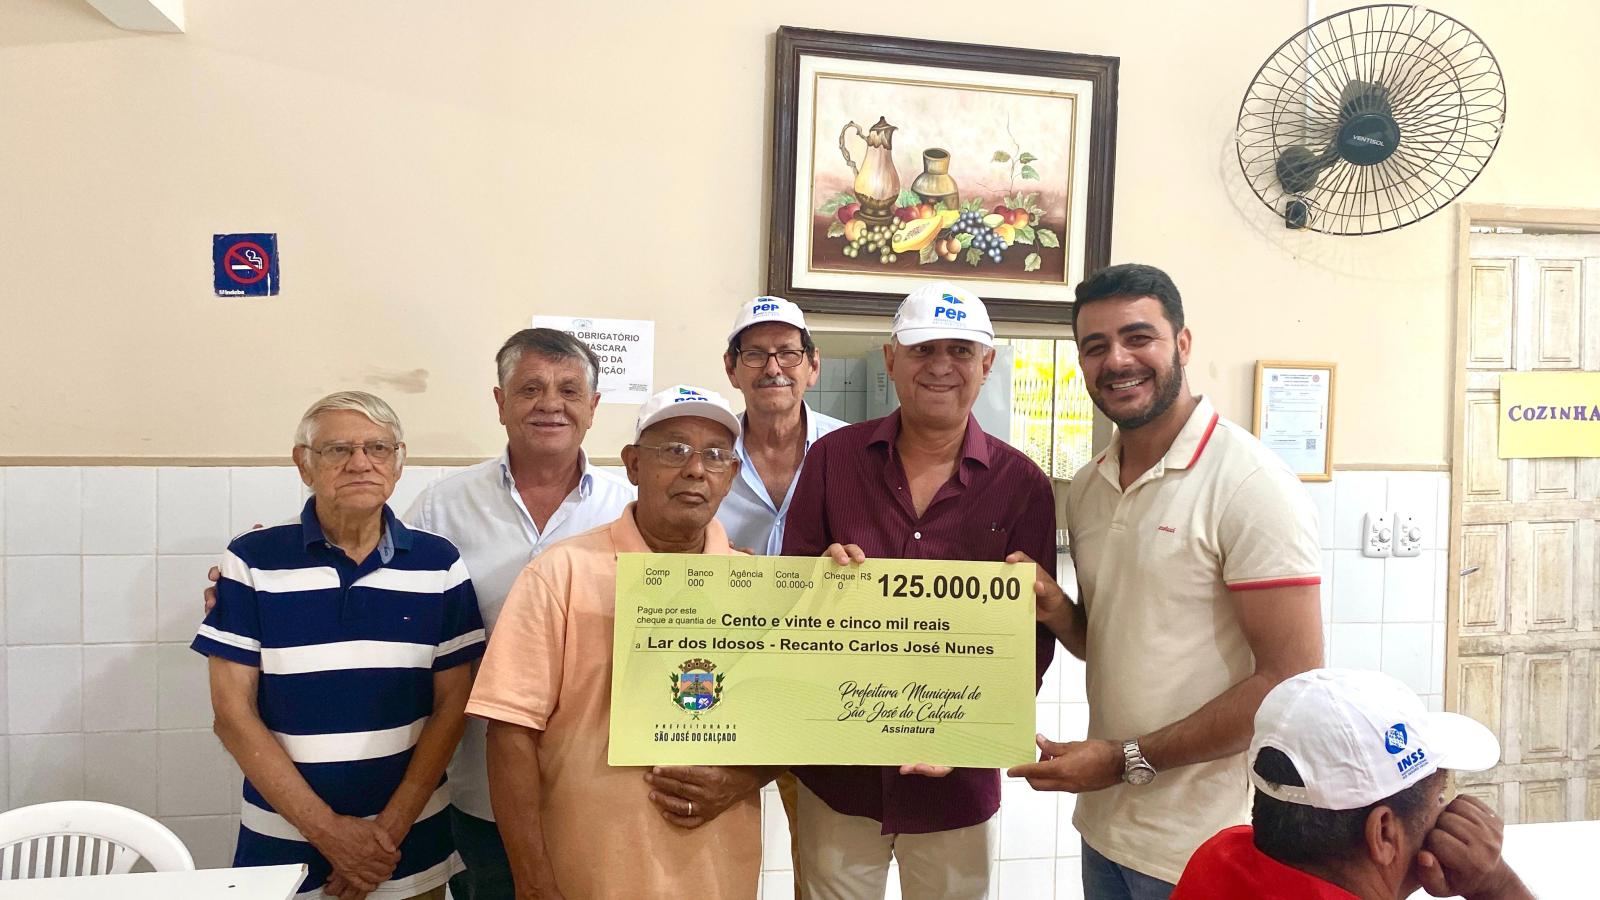 Lar dos Idosos - Recanto Carlos José Nunes recebe cheque simbólico da Prefeitura de São José do Calçado